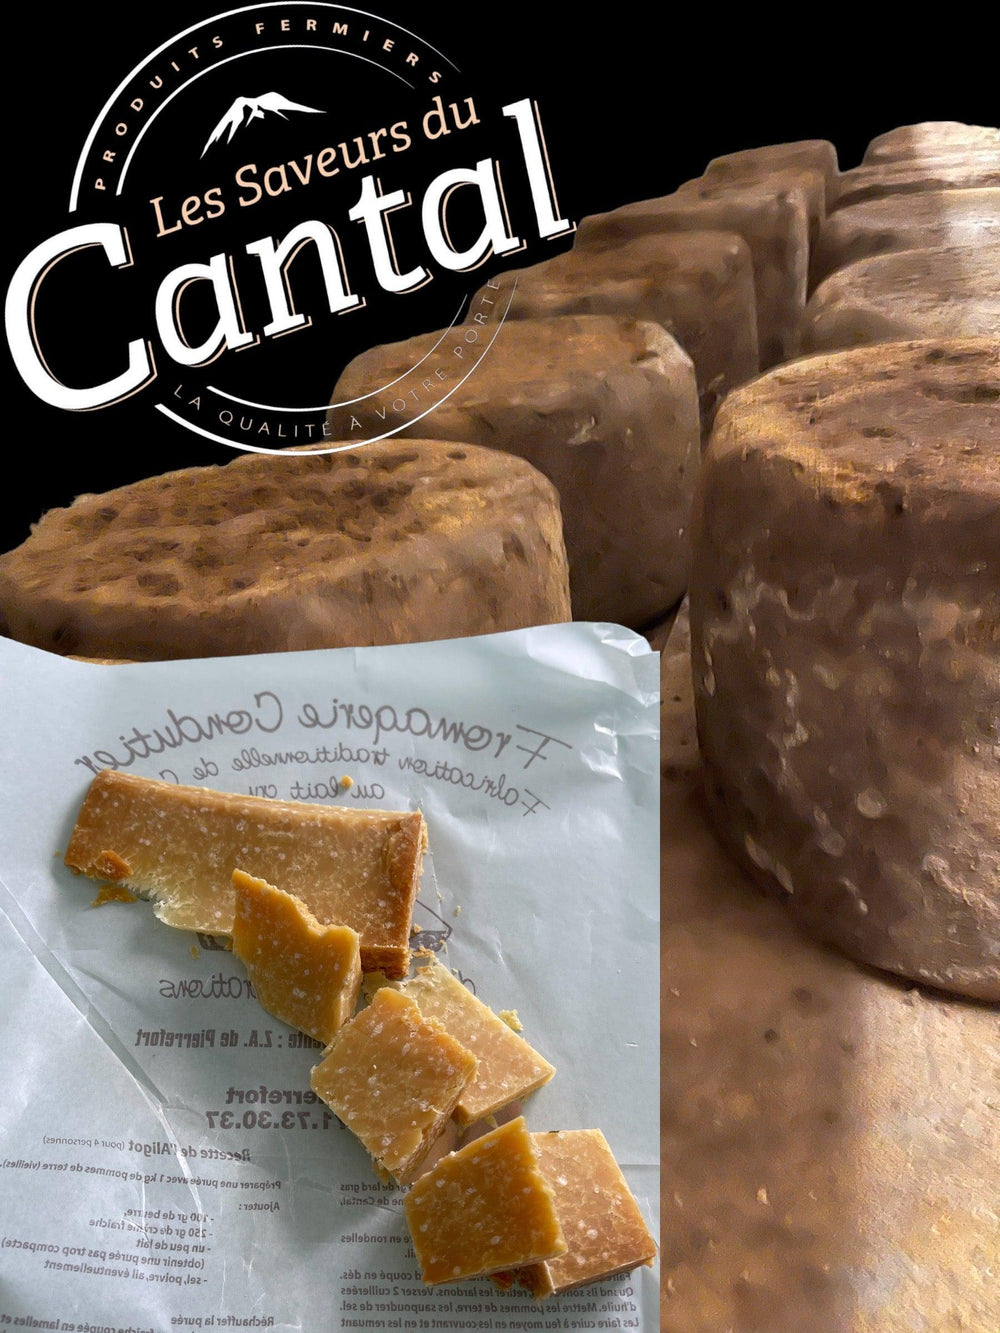 Le Cantal Extra Vieux est un fromage rare et prestigieux, affiné pendant plus de 3 ans dans des caves naturelles pour développer des arômes intenses et complexes. Sa pâte est ferme et friable, avec des notes de noisette, de beurre et de caramel. Ce fromage d'exception est le fruit d'une fabrication artisanale et traditionnelle, avec du lait cru de vache de la région Auvergne Rhône-Alpes. Découvrez le Cantal Extra Vieux, un véritable trésor gastronomique à savourer .